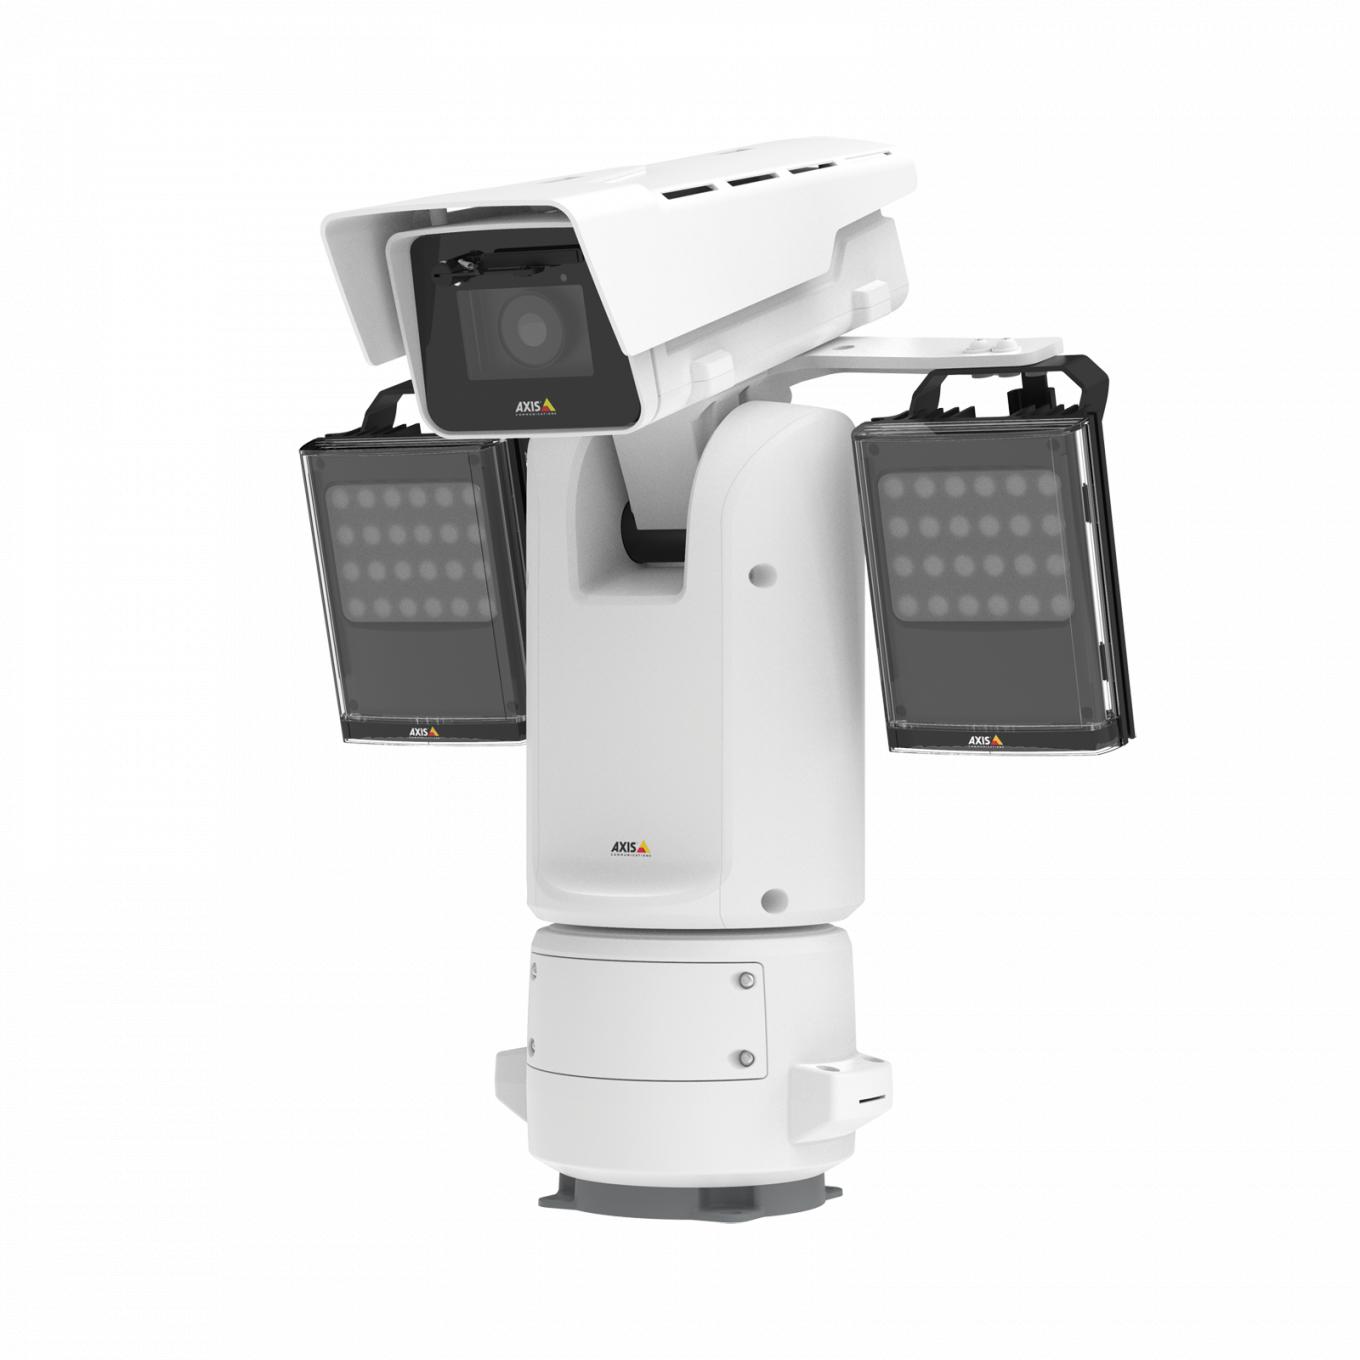 AXIS Q8685-E PTZ IP Camera montada com a AXIS Q8685-E PTZ Network Camera